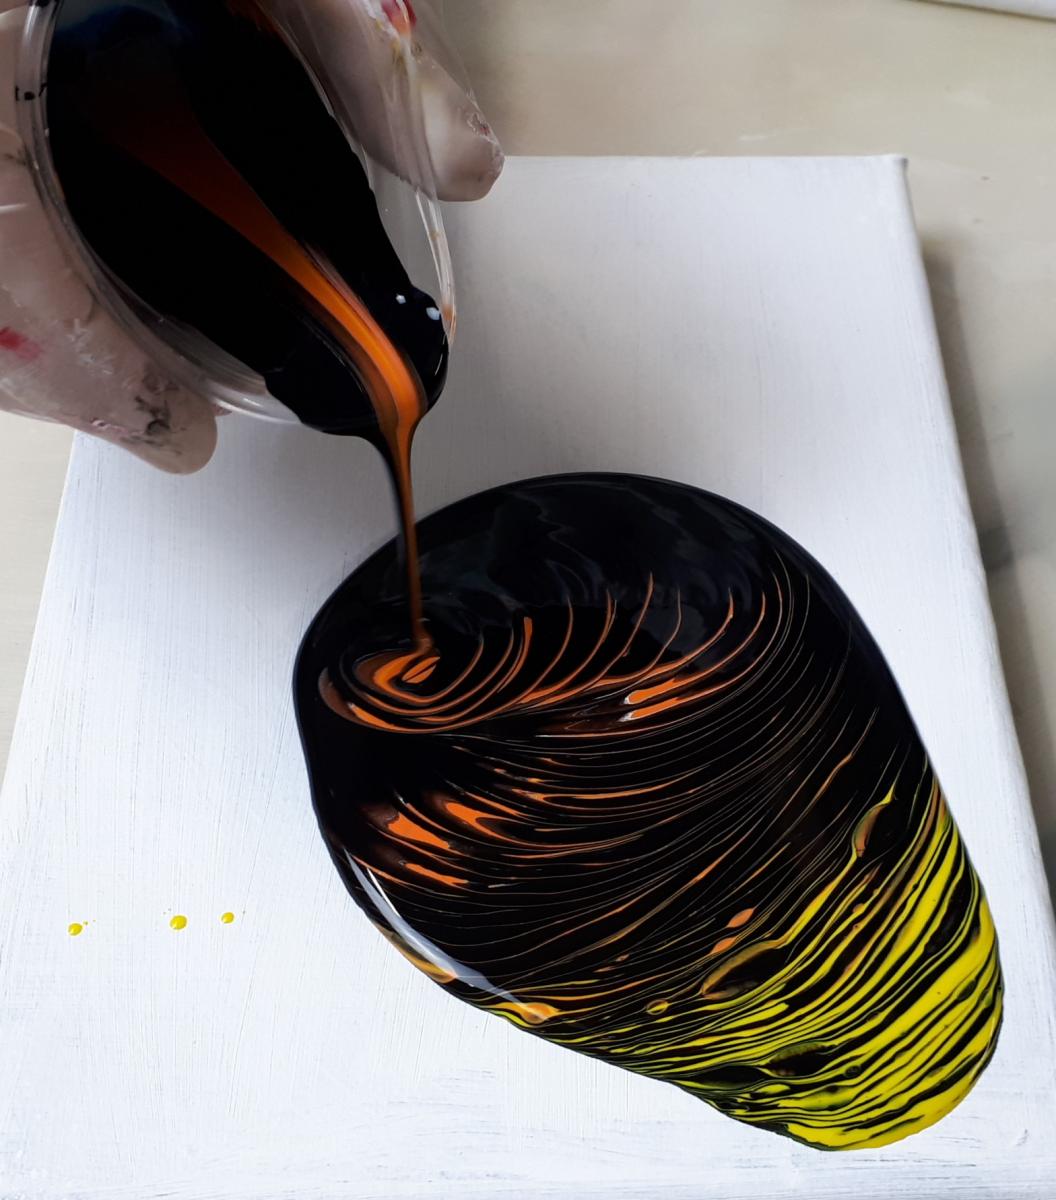 technique pouring travelling ring pour painturoo.art 4